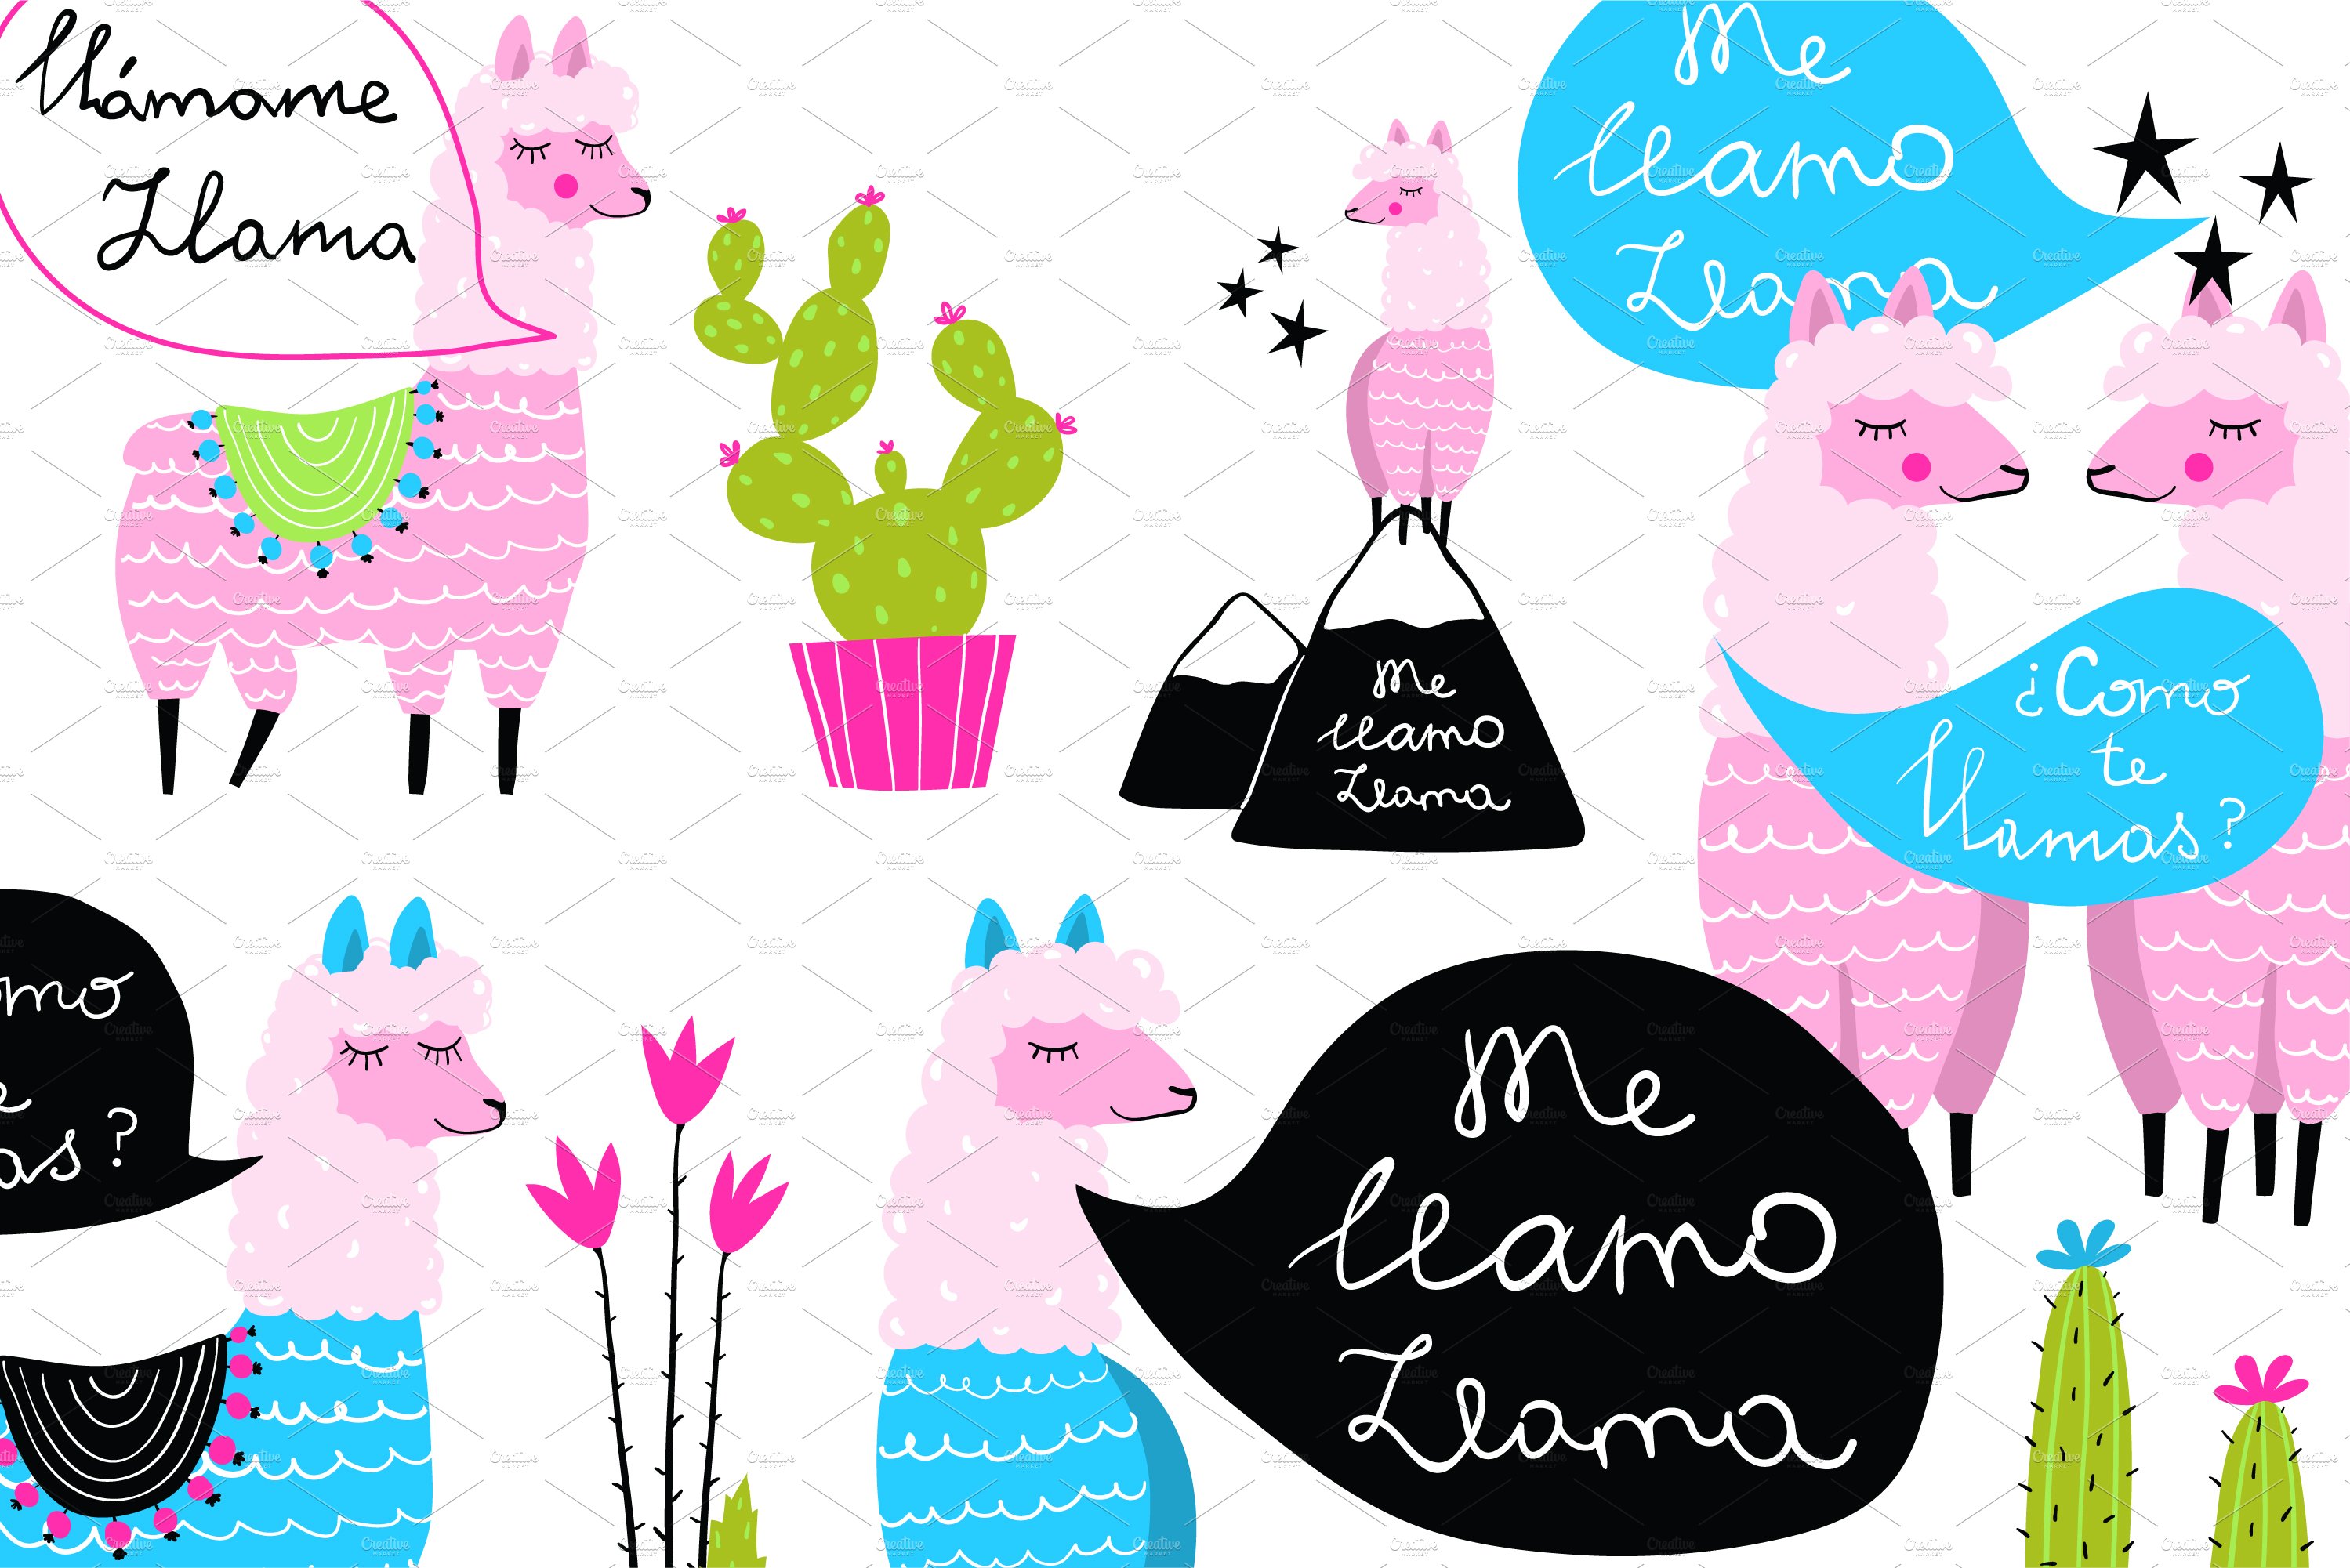 Fun Llama and Cacti Me LLamo Llama cover image.